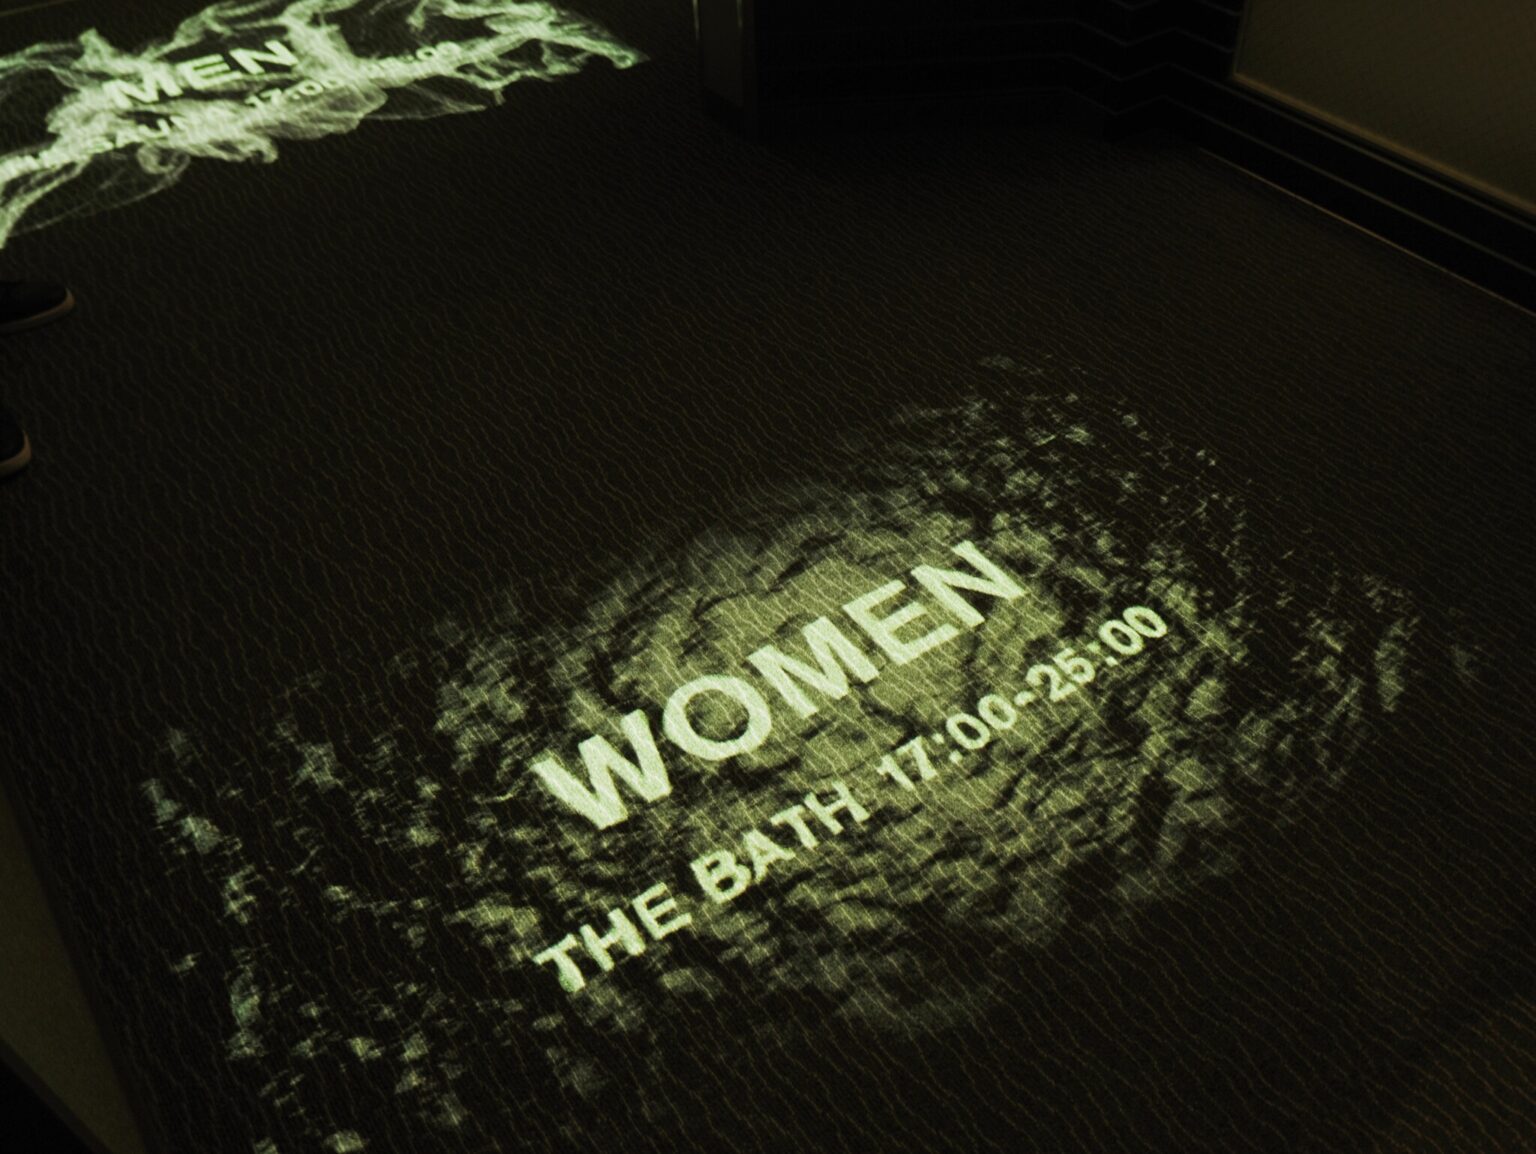 日毎に男女入れ替え制。入り口の床にプロジェクターで案内が投影されている。